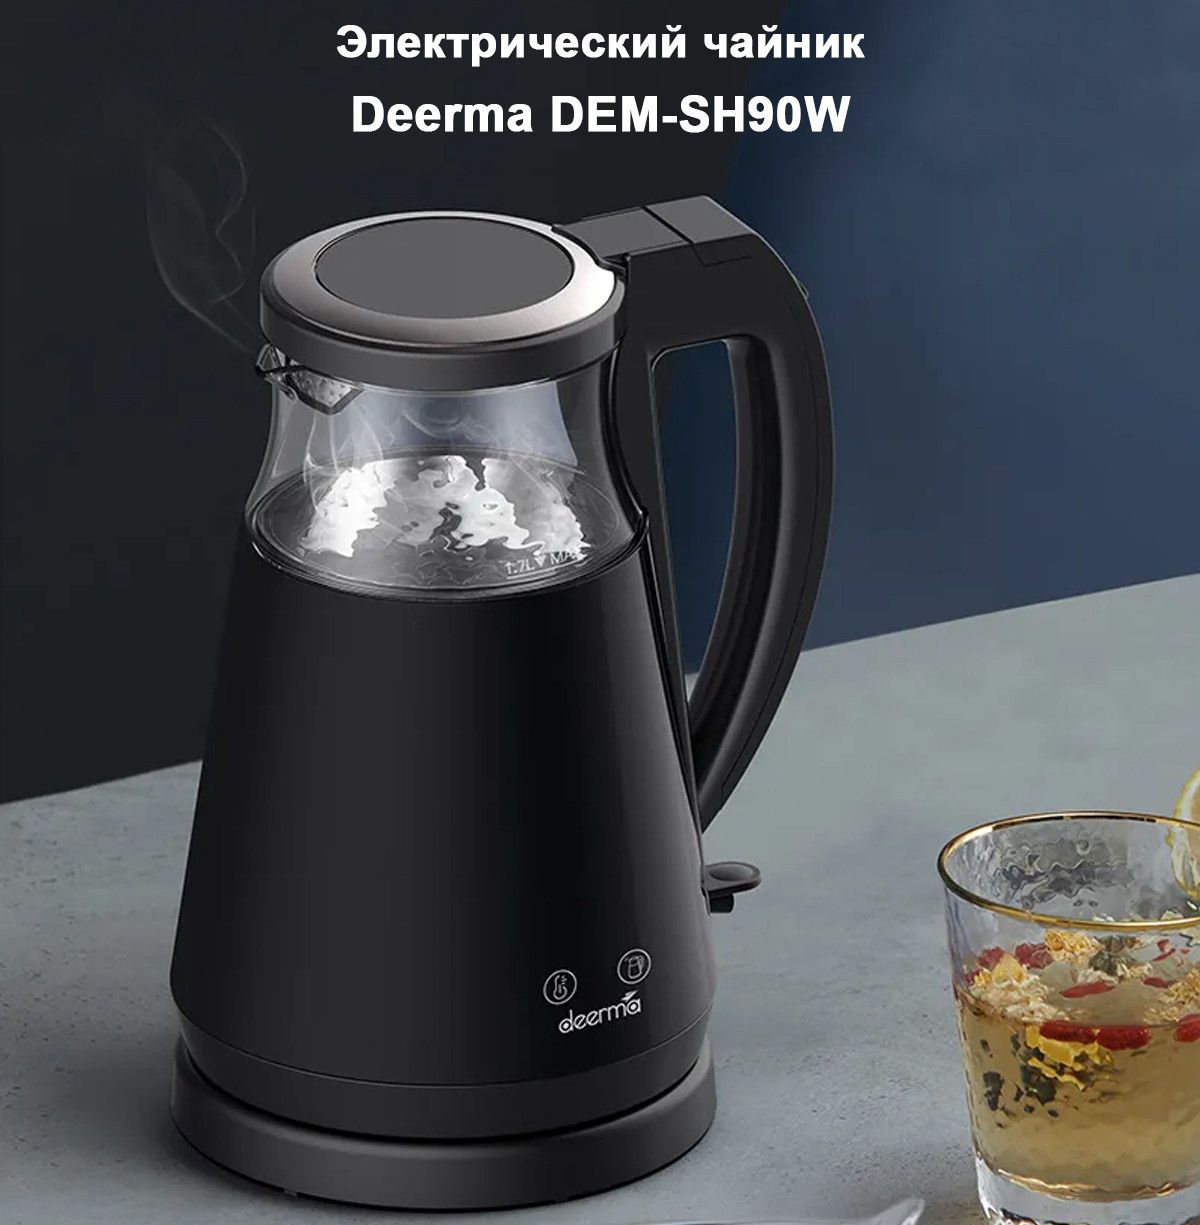 Электрический чайник Deerma DEM-SH90W